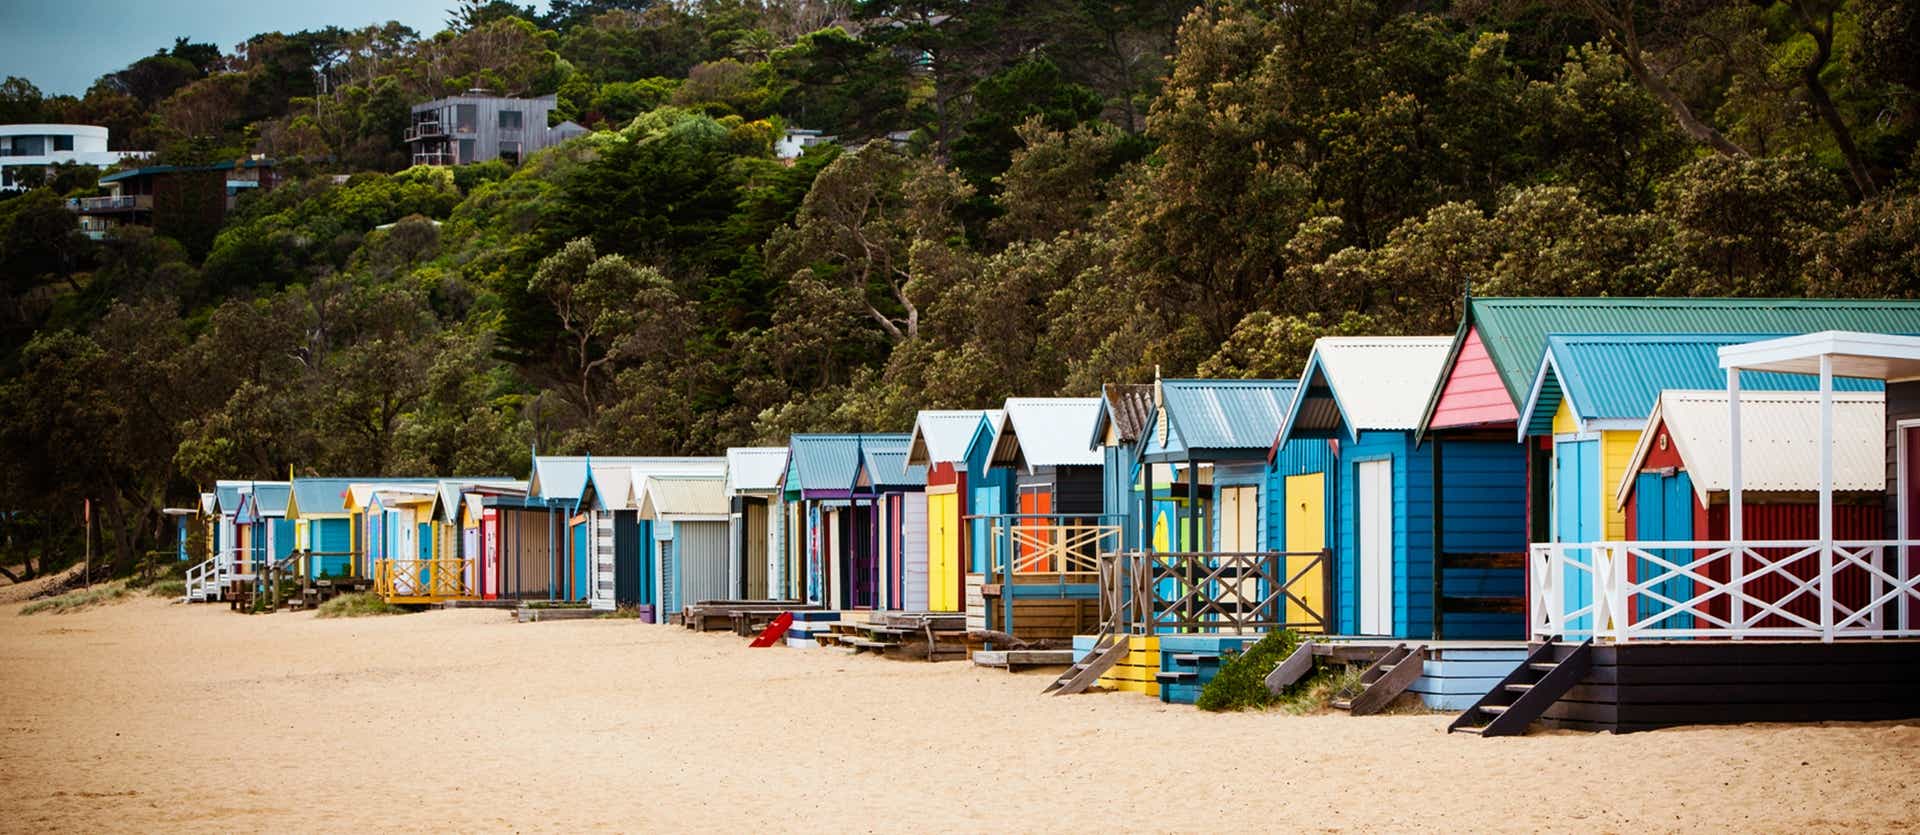 Colourful Beach Cabins <span class="iconos separador"></span> Melbourne